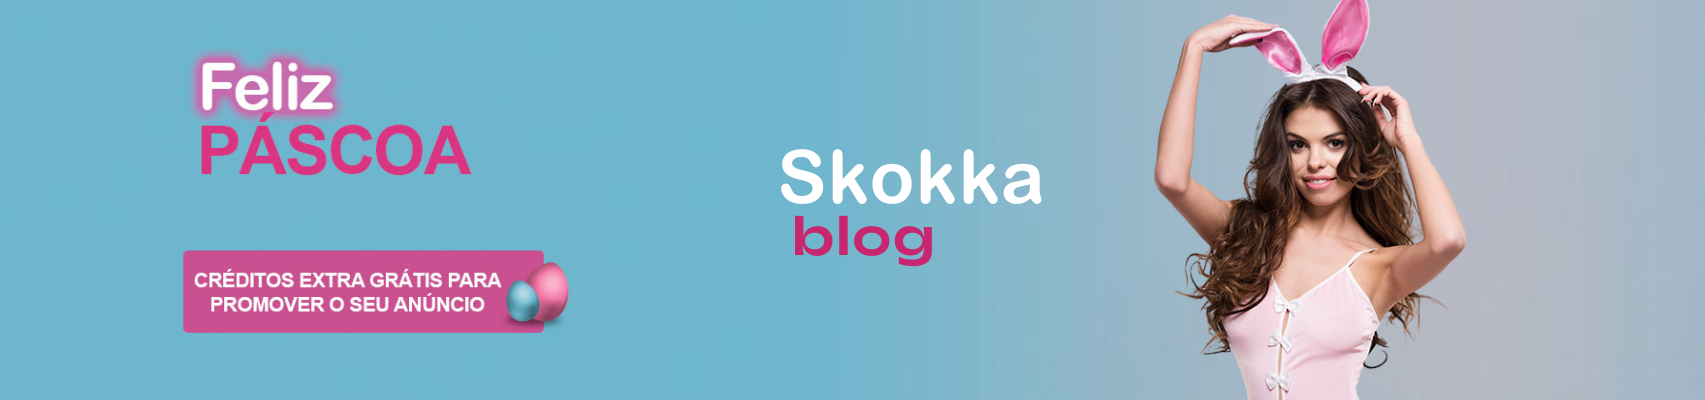 Blog oficial do Skokka